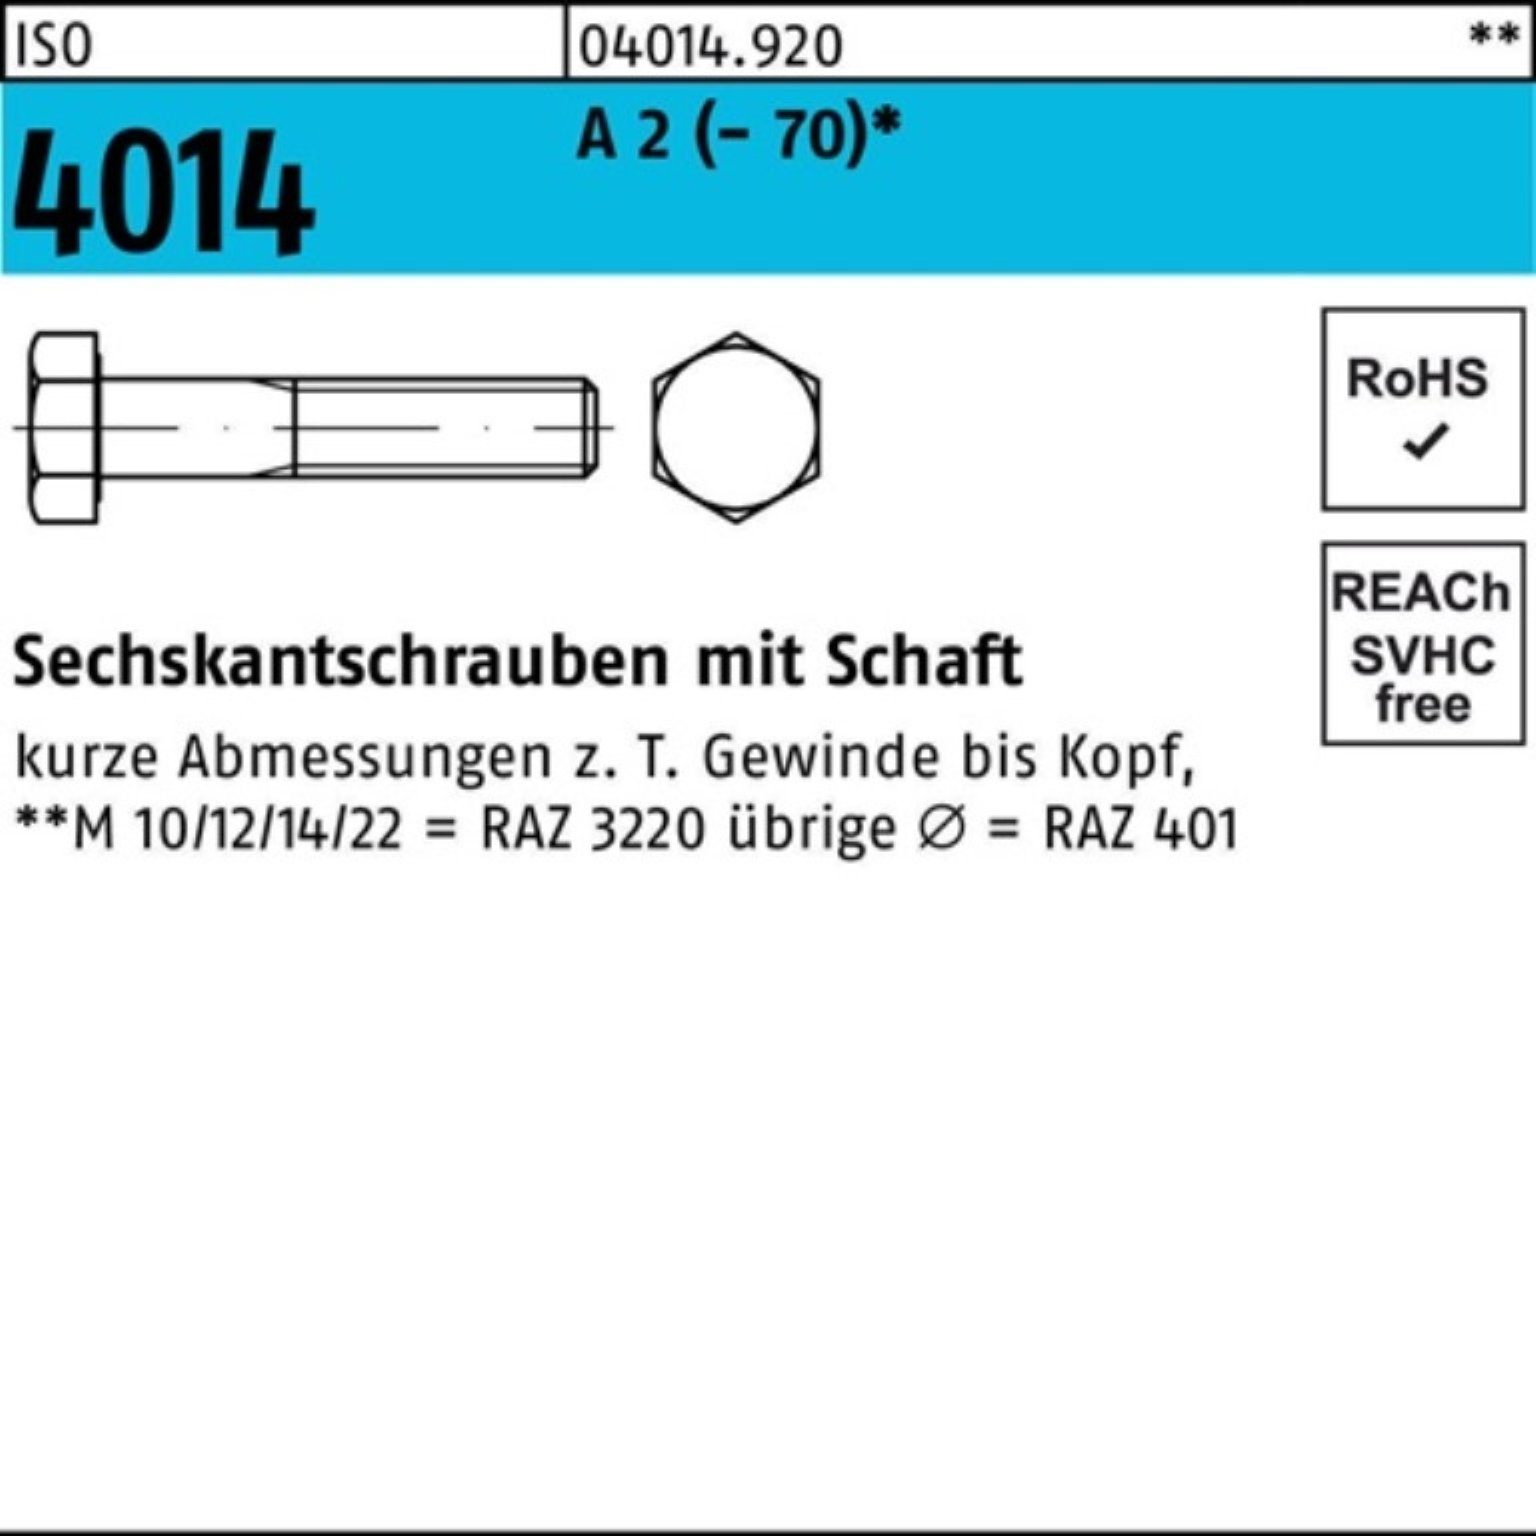 Pack Sechskantschraube 4014 100er 25 A St 2 Schaft 75 (70) M16x Sechskantschraube Bufab ISO